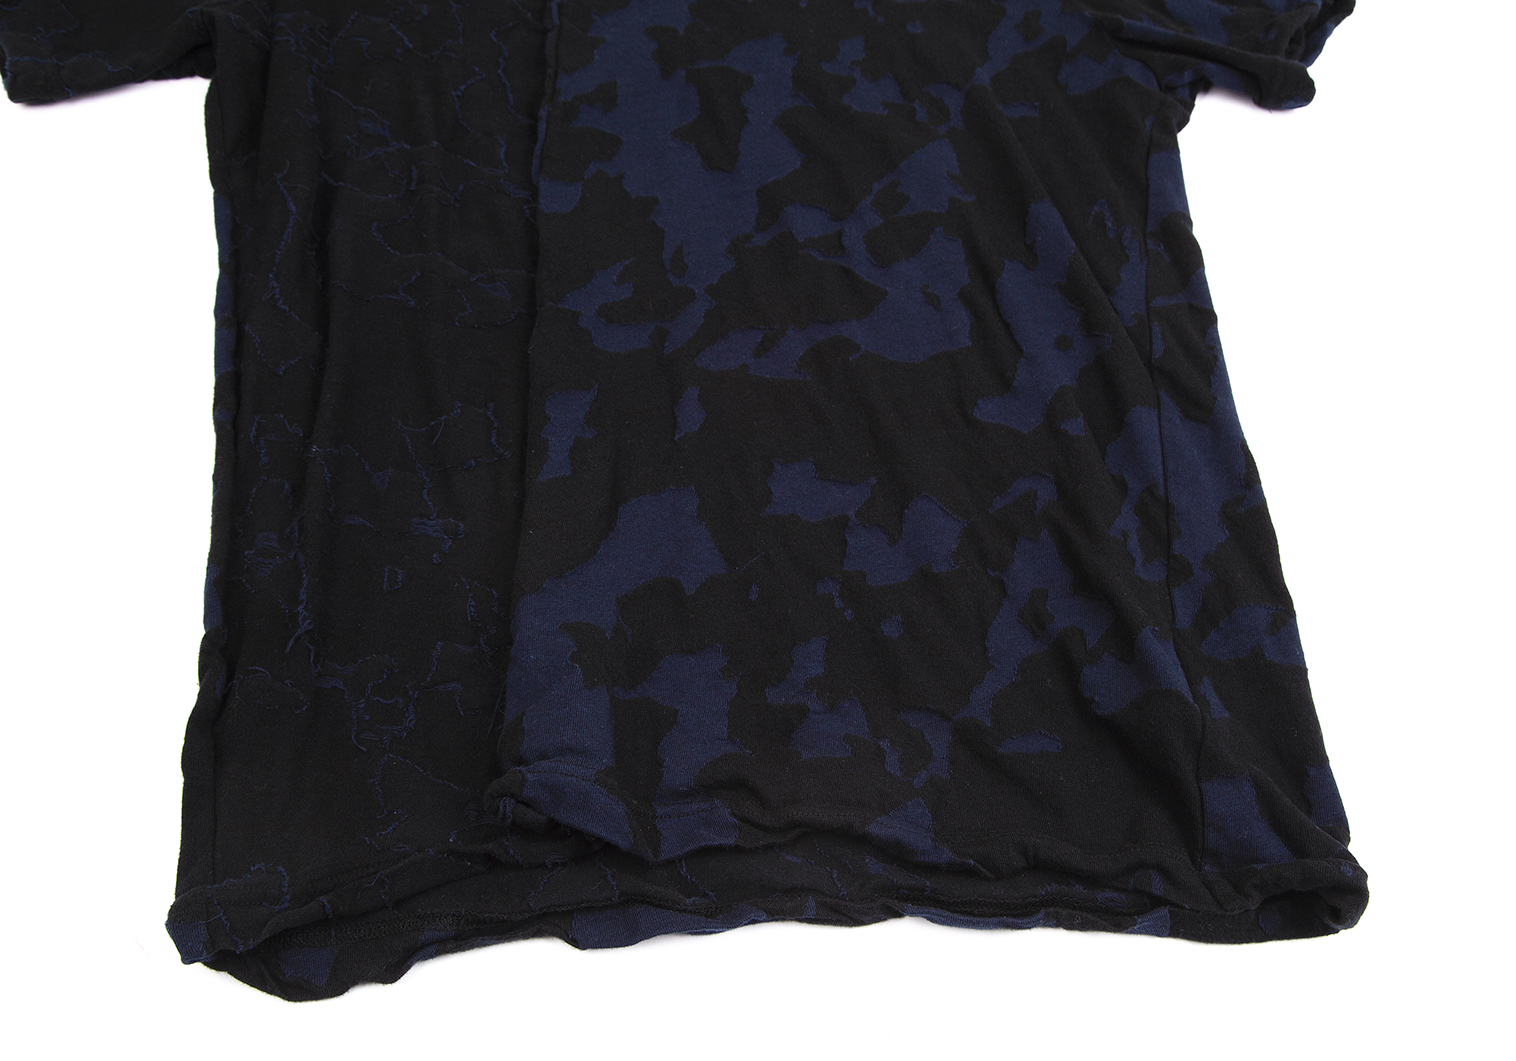 ワイズY's コットンジャガードシームTシャツ 黒紺4